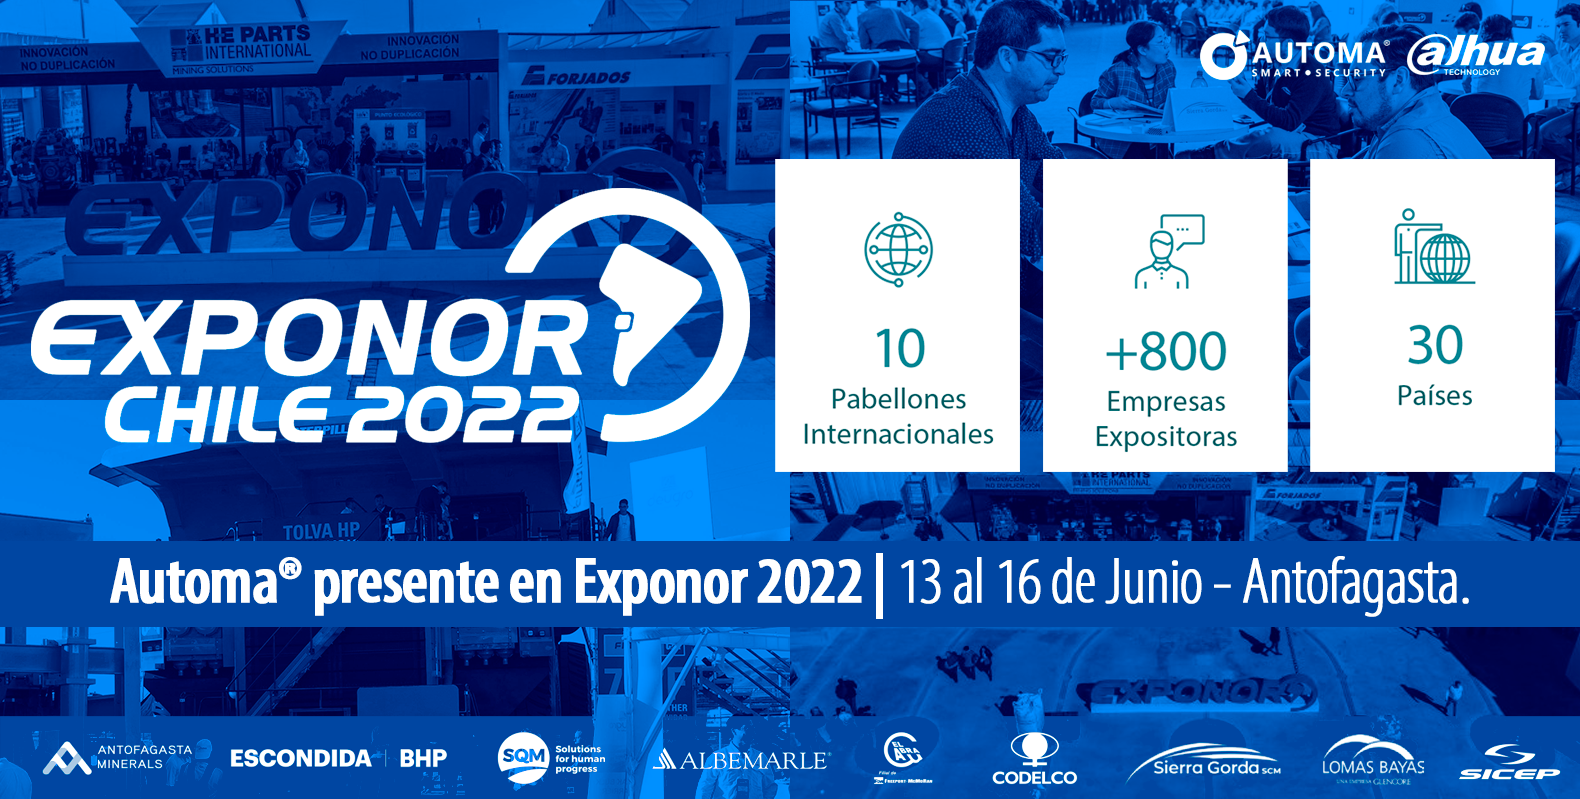 Automa® presente en Exponor 2022 | 13 al 16 de Junio - Antofagasta